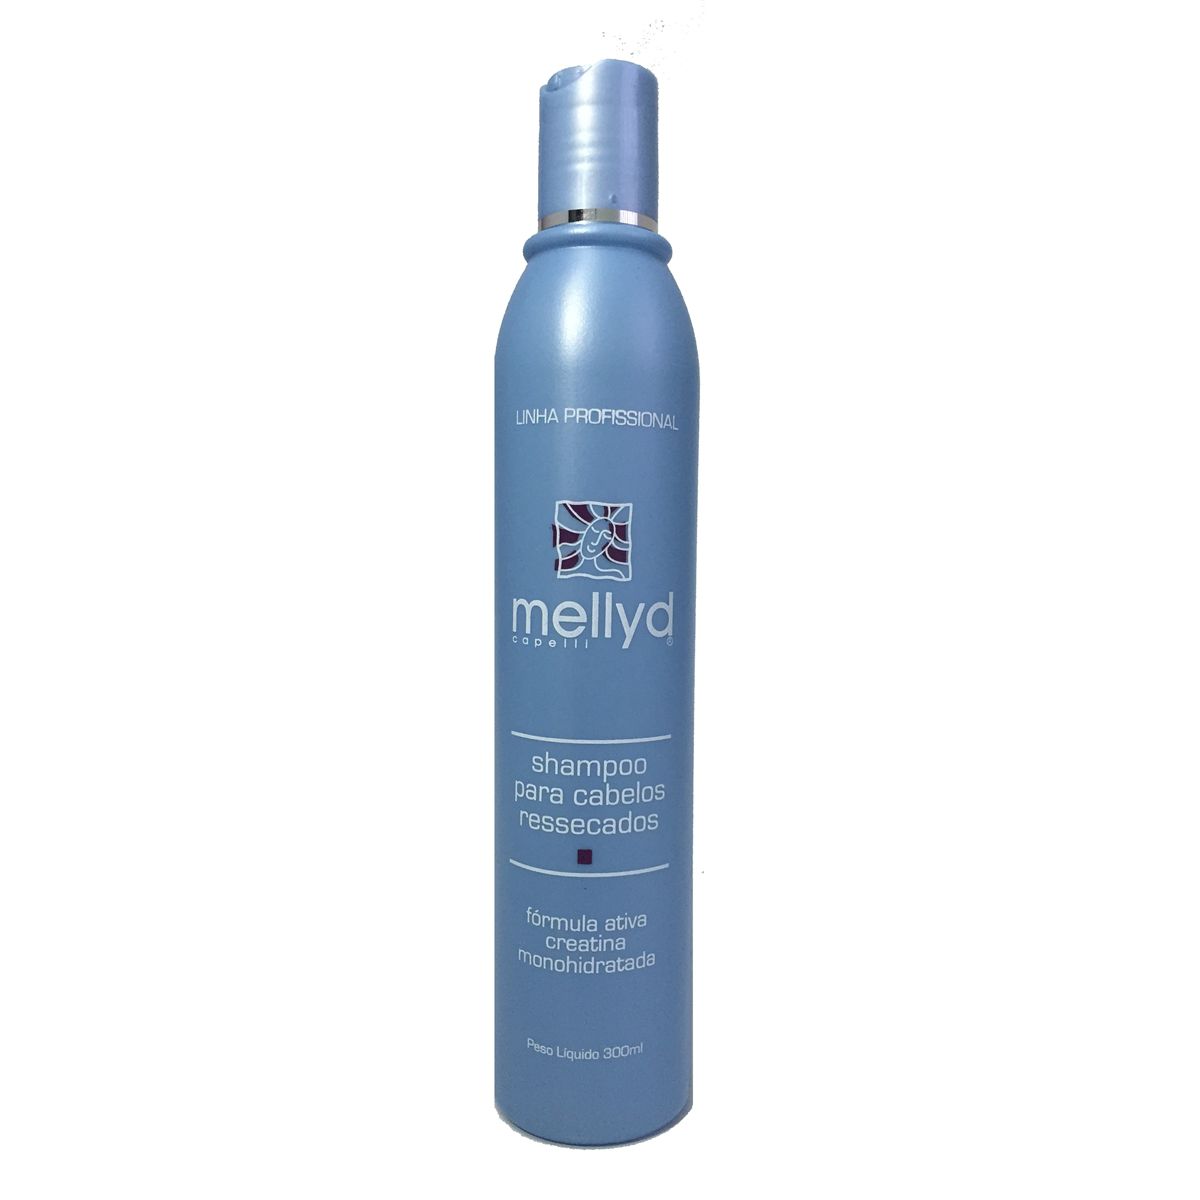 Mellyd Shampoo para cabelos ressecados - 300ml